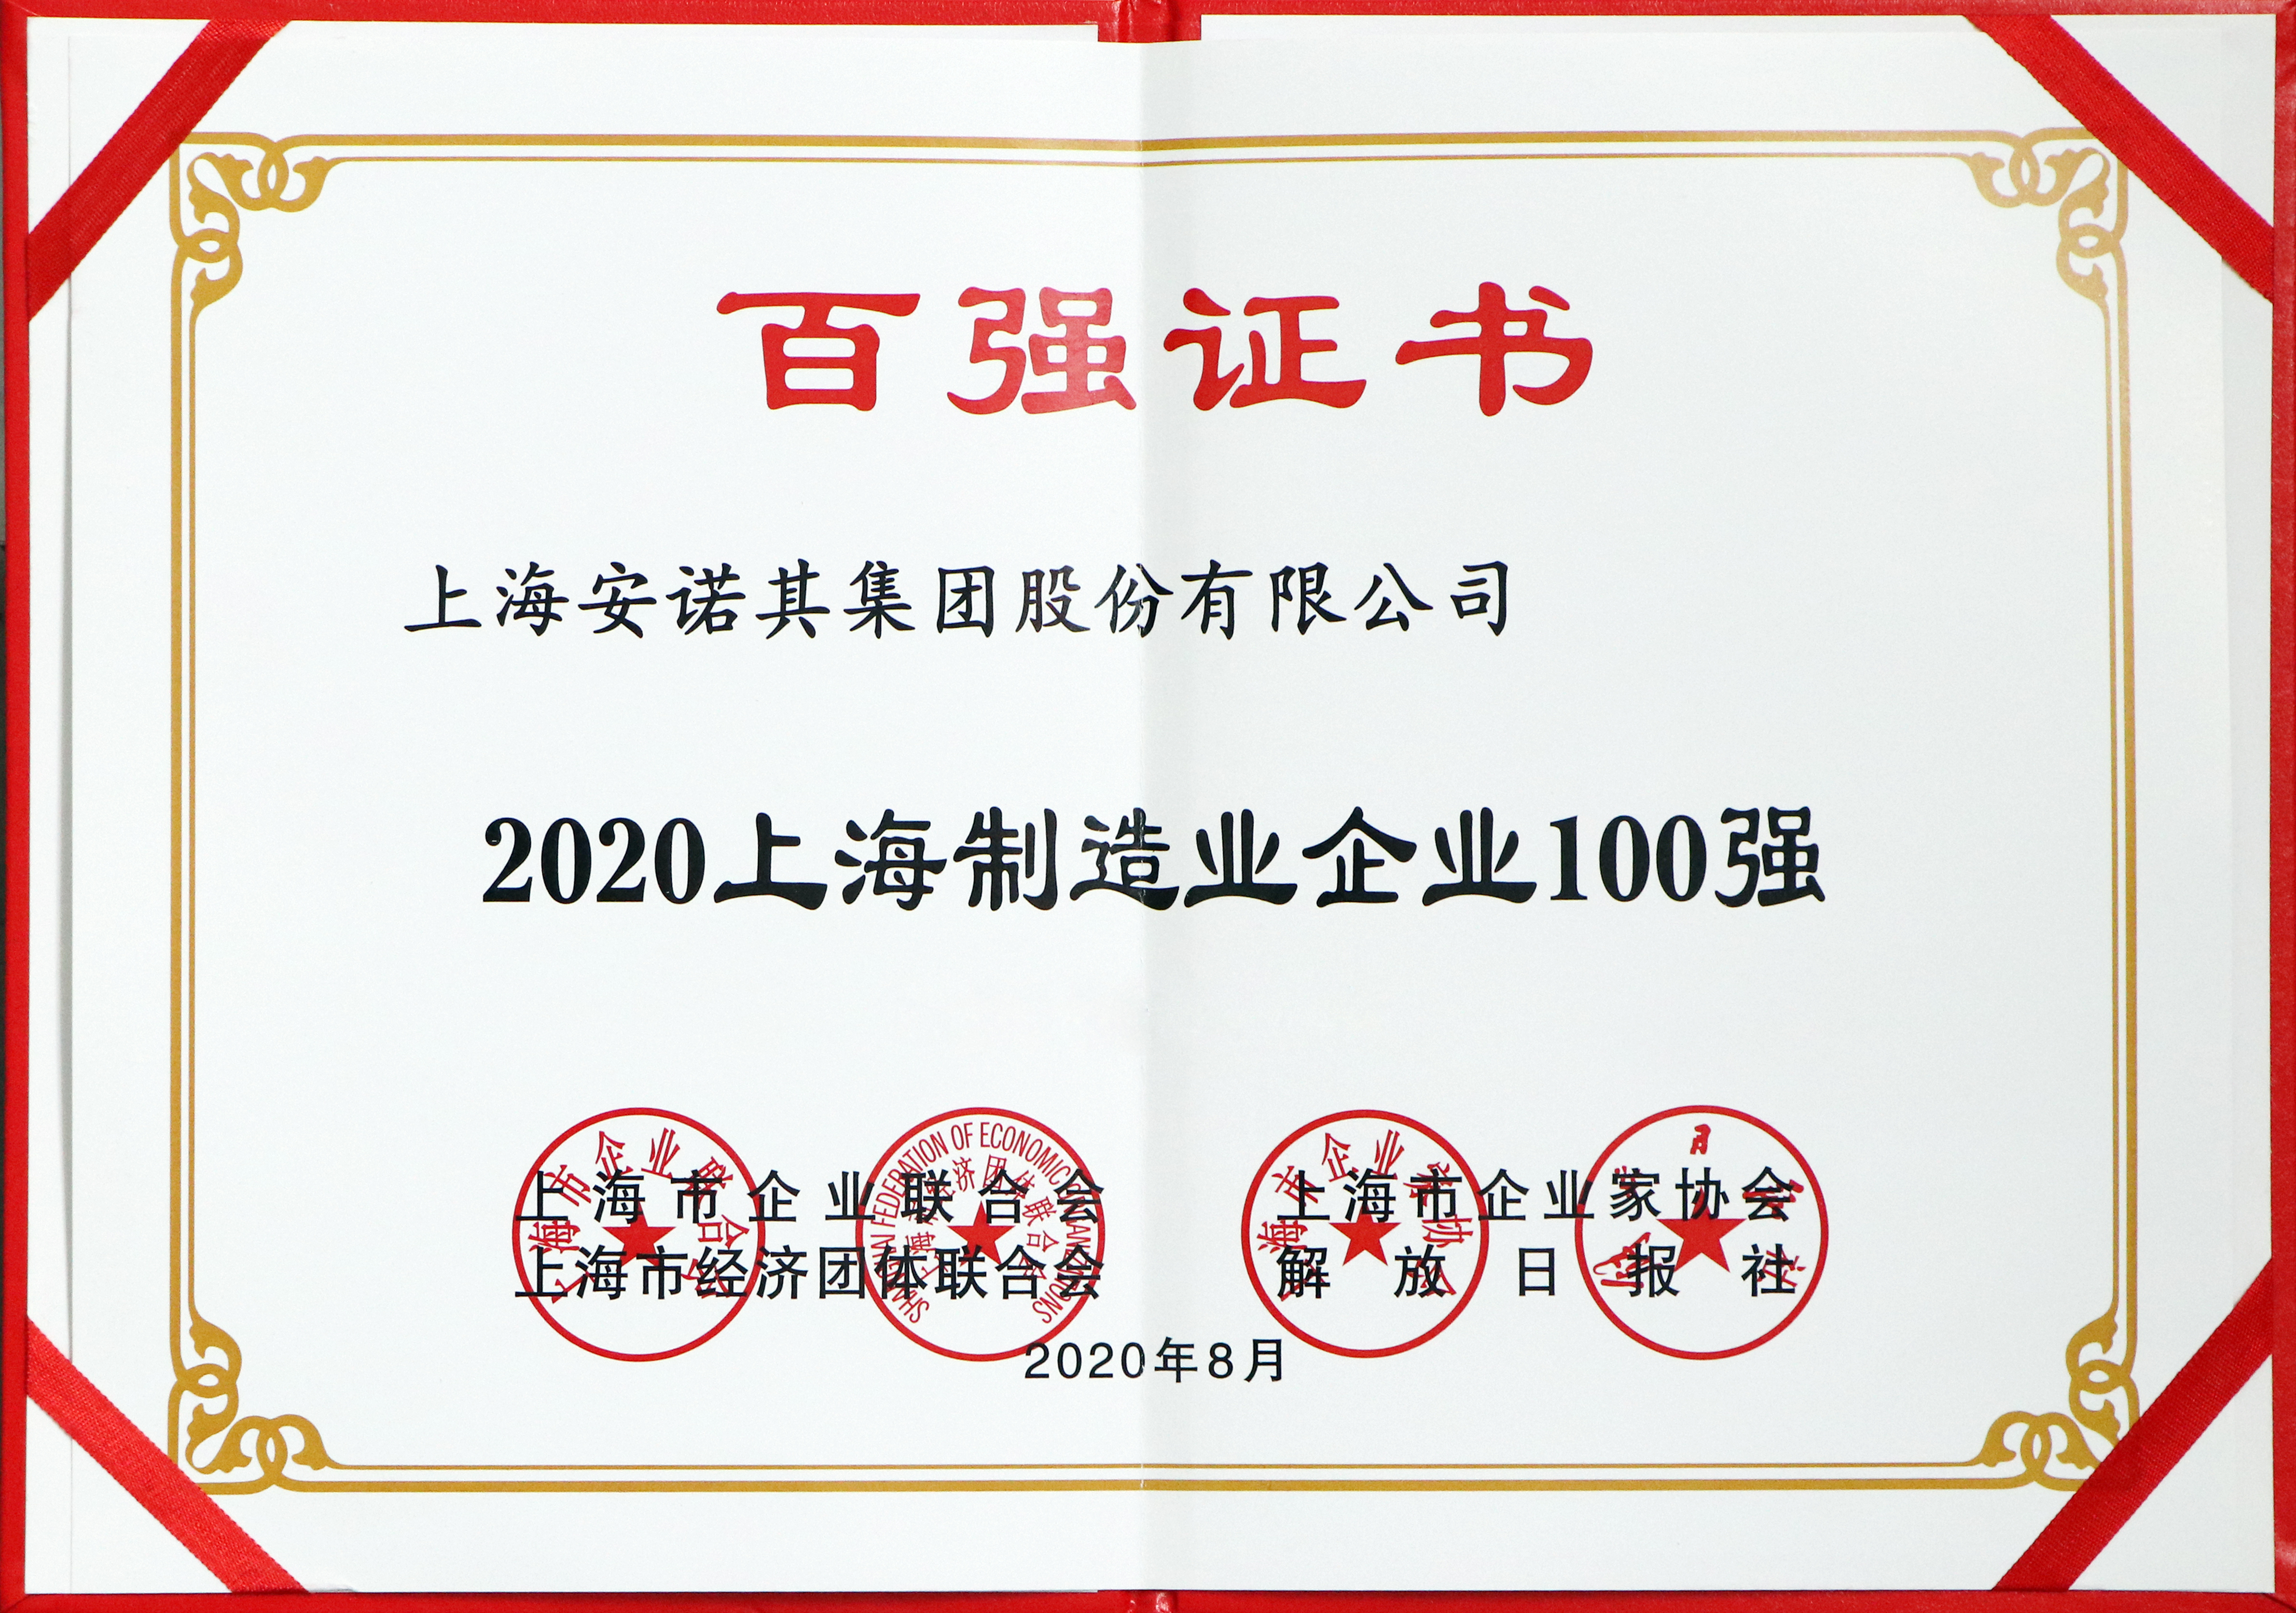 2020年獲上海制造業100強